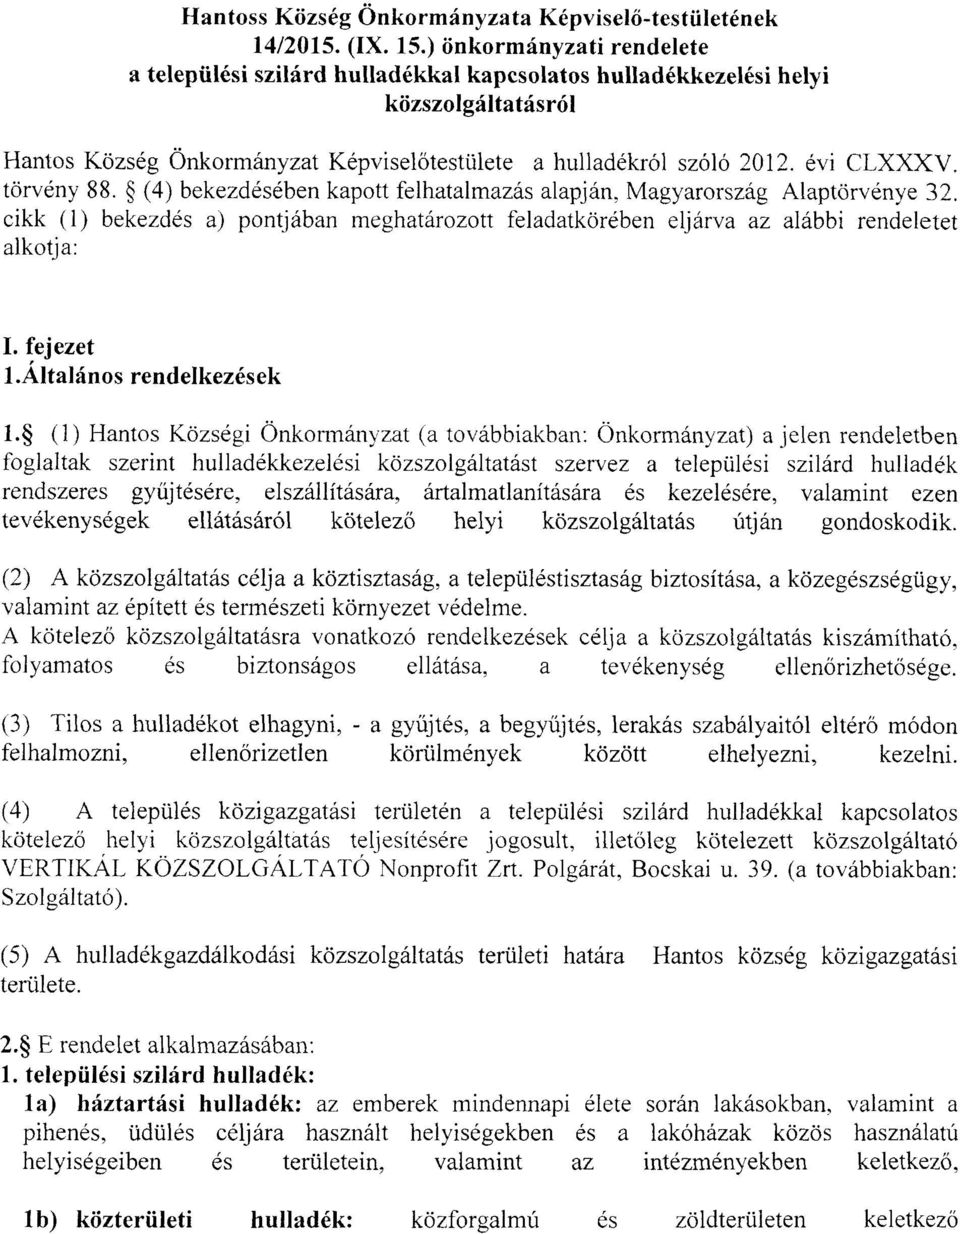 törvény 88. (4) bekezdésében kapott felhatalmazás alapján, Magyarország Alaptörvénye 32. cikk (1) bekezdés a) pontjában meghatározott feladatkörében eljárva az alábbi rendeletet alkotja: I. fejezet 1.